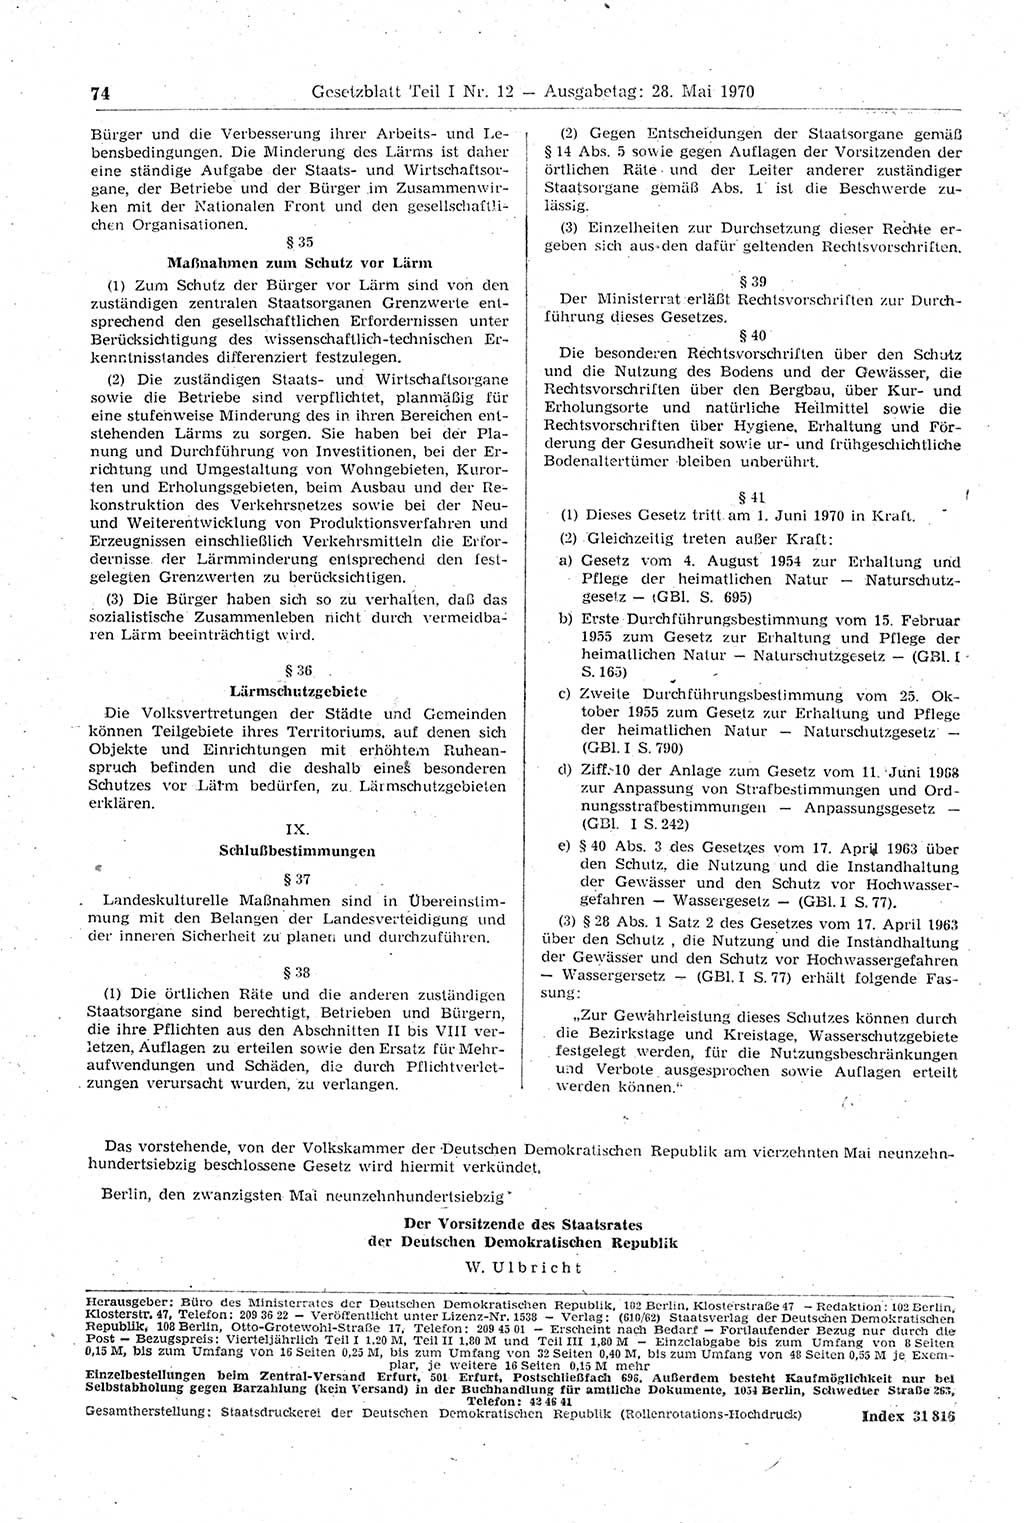 Gesetzblatt (GBl.) der Deutschen Demokratischen Republik (DDR) Teil Ⅰ 1970, Seite 74 (GBl. DDR Ⅰ 1970, S. 74)